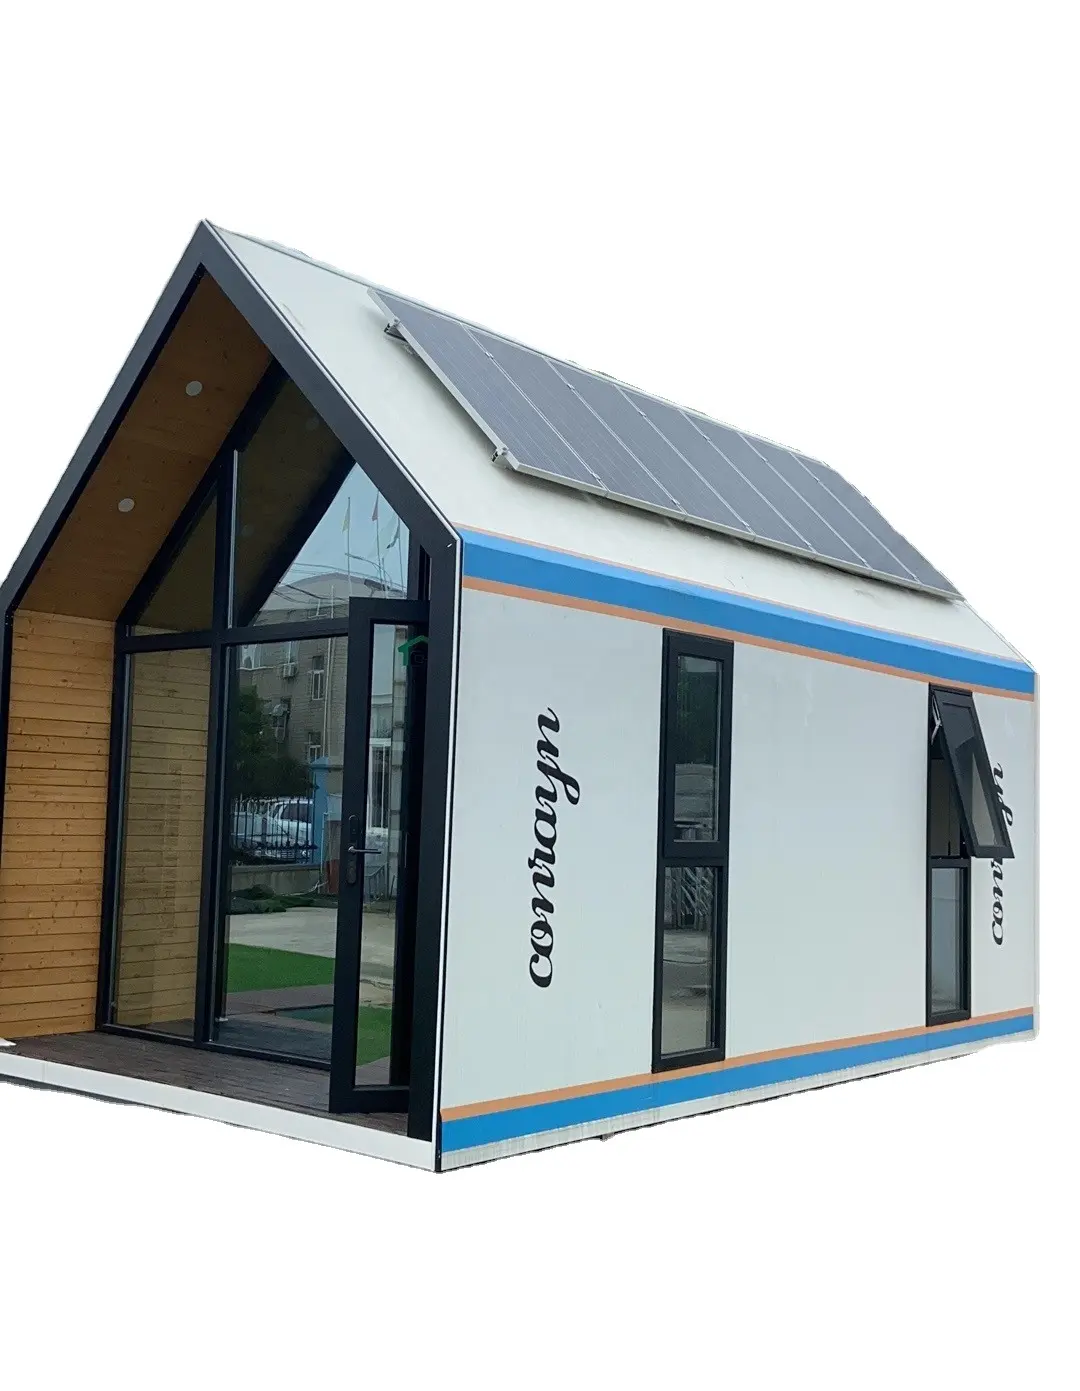 Solarmobile Häuser im Freien szenische Hotels modulares Haus fertighaus für Kulturtourismus und Roaming-Wohnhaus